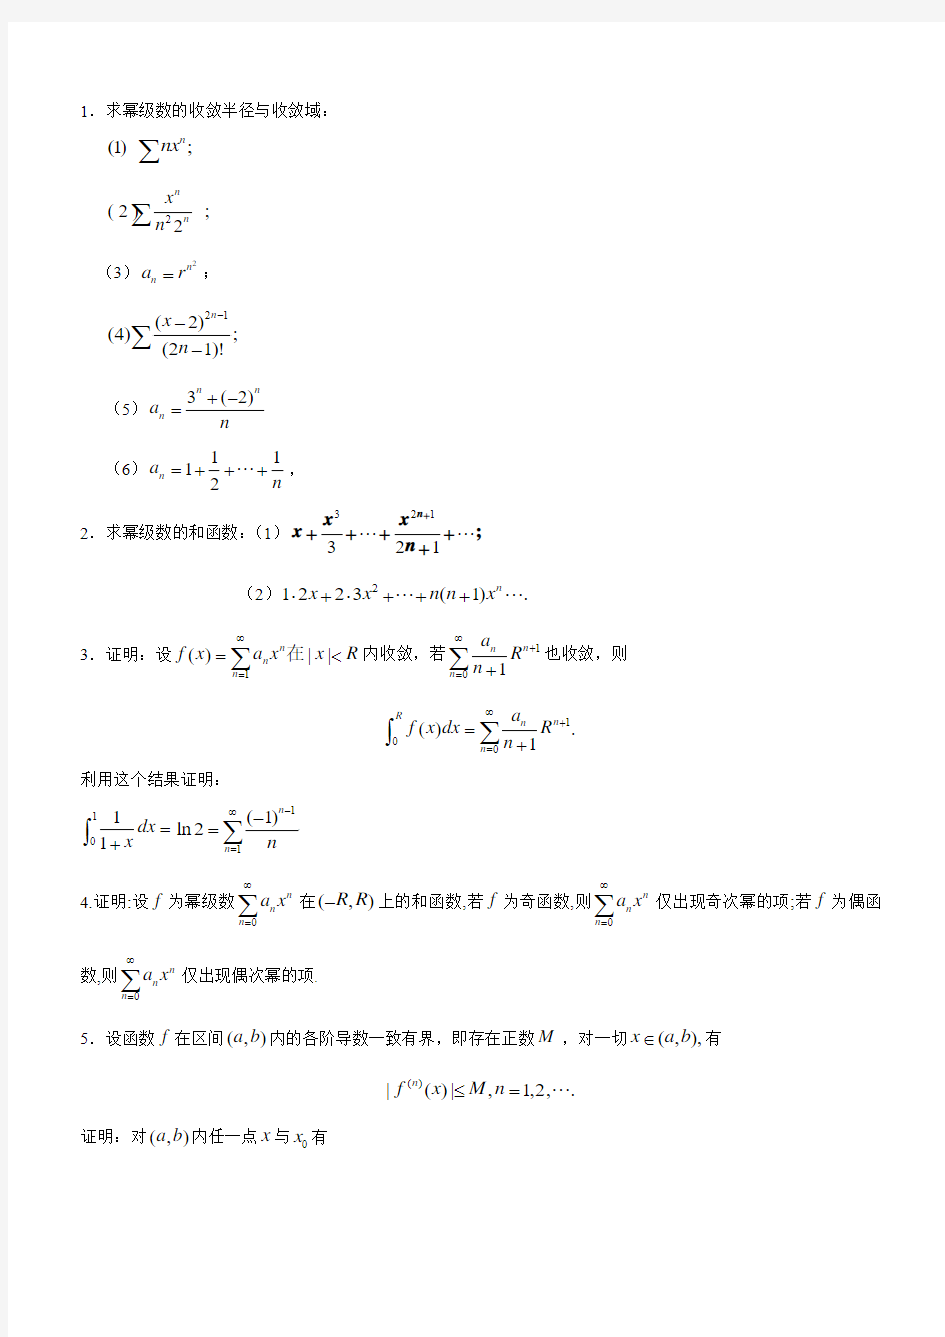 数学分析课本(华师大三版)-习题及答案数学分析课本(华师大三版)-习题及答案14